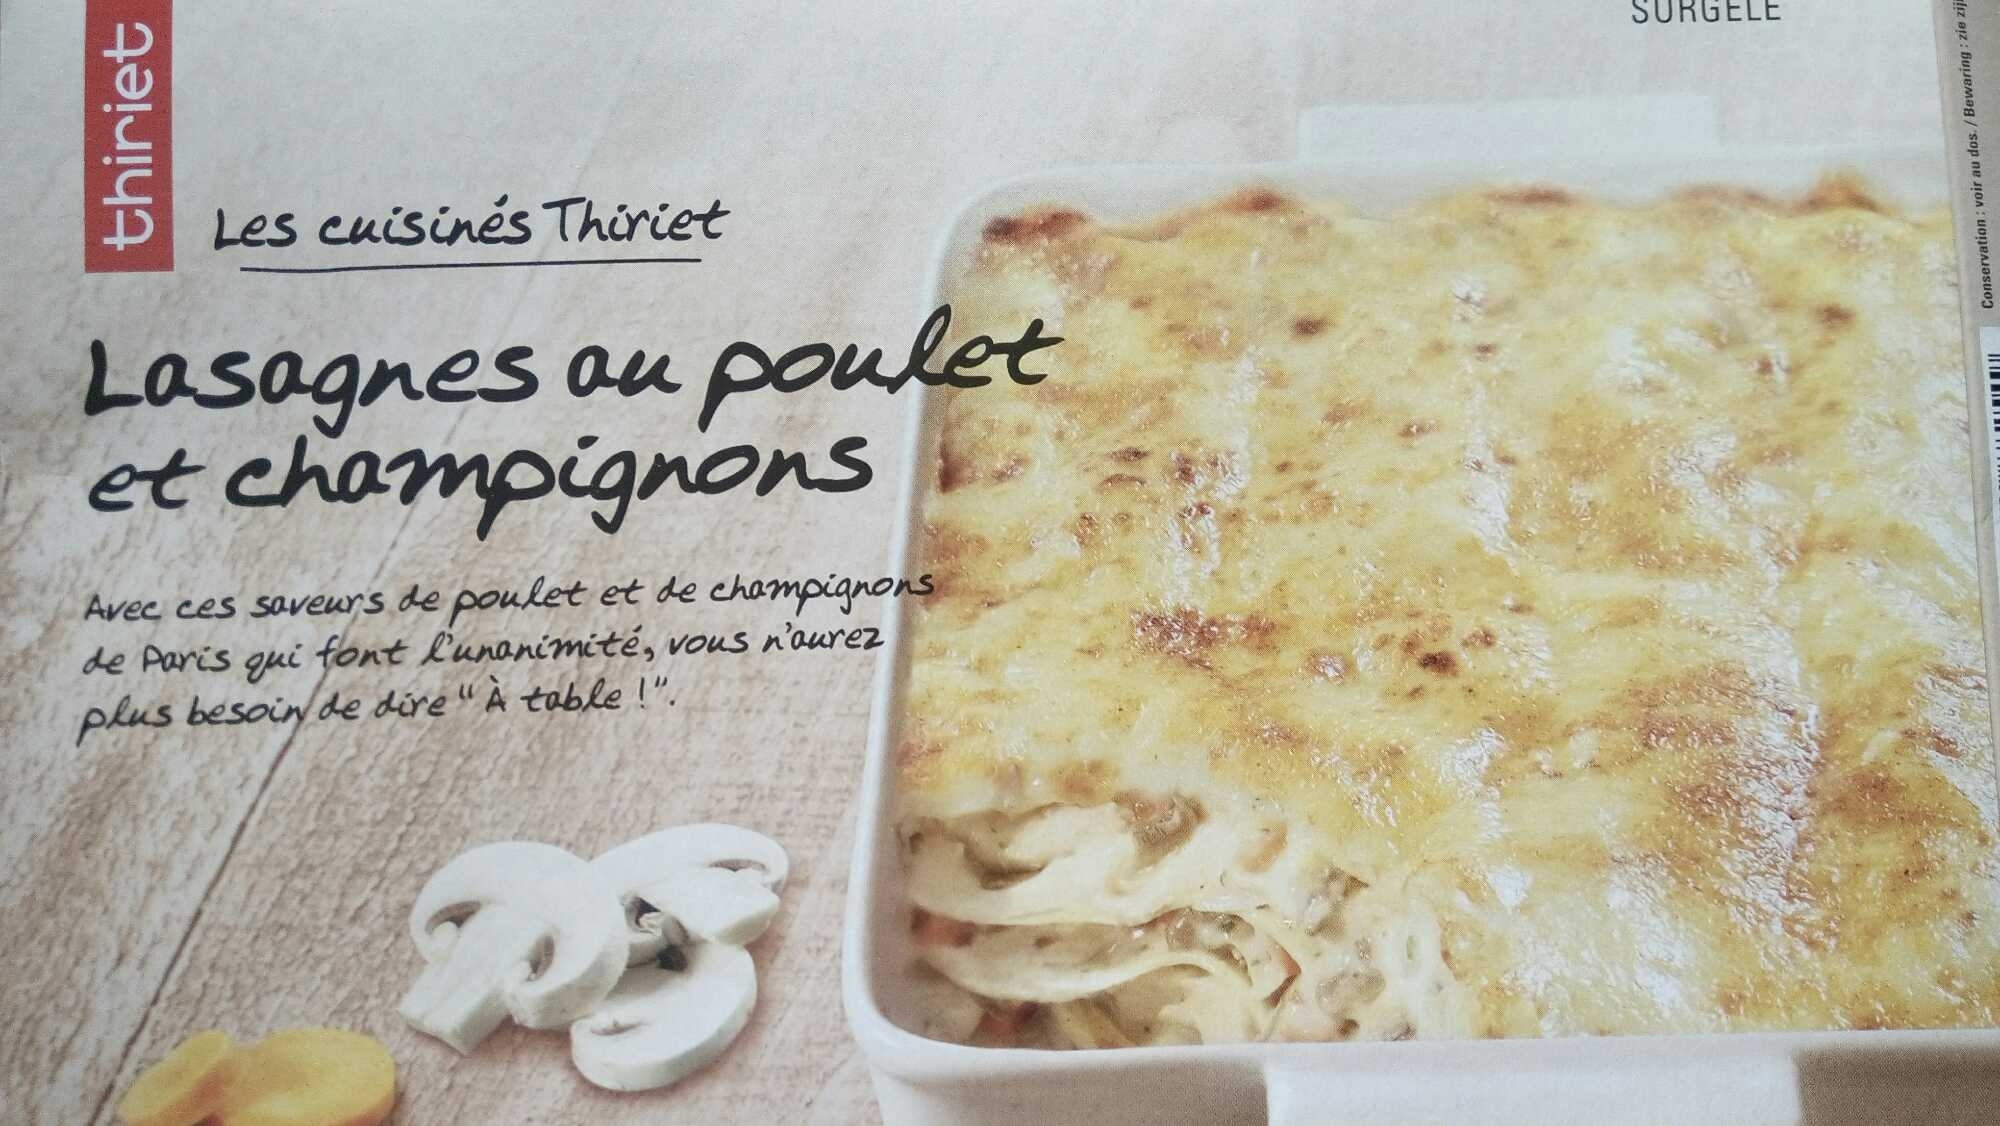 Lasagnes au Poulet et Champignons - Product - fr